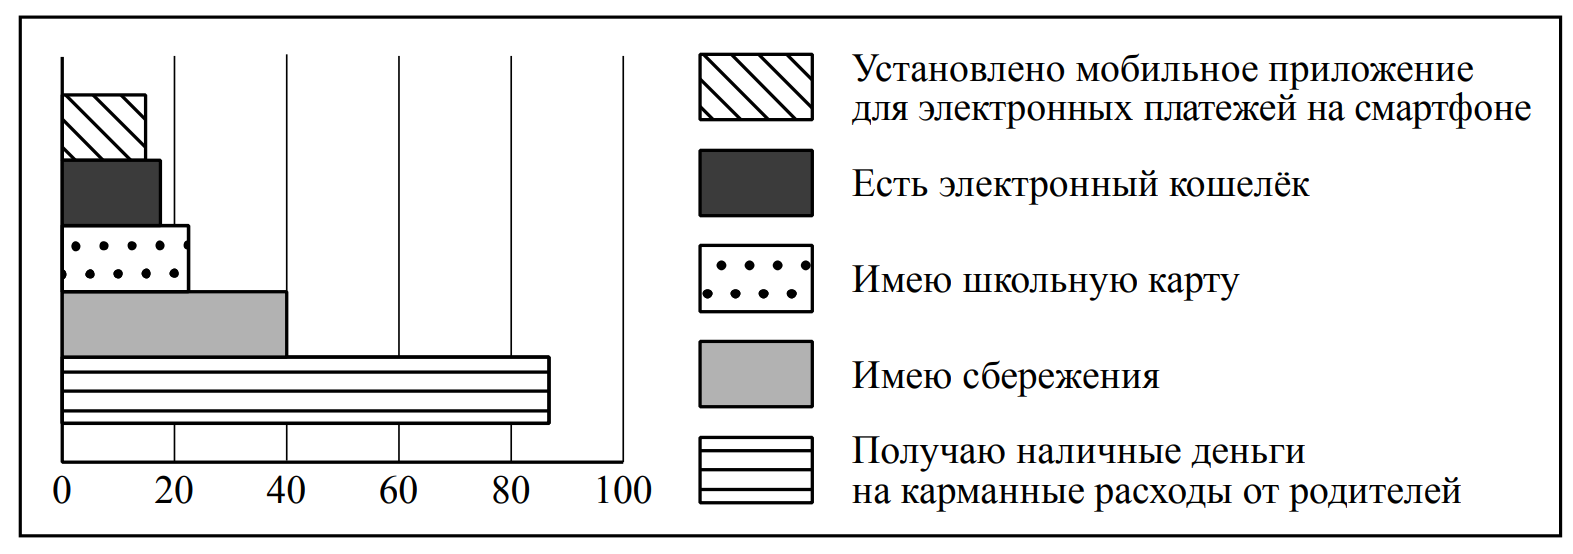 Проводил опрос среди российских школьников им задавали. Диаграмма по обществознанию 6 класс карманные деньги.